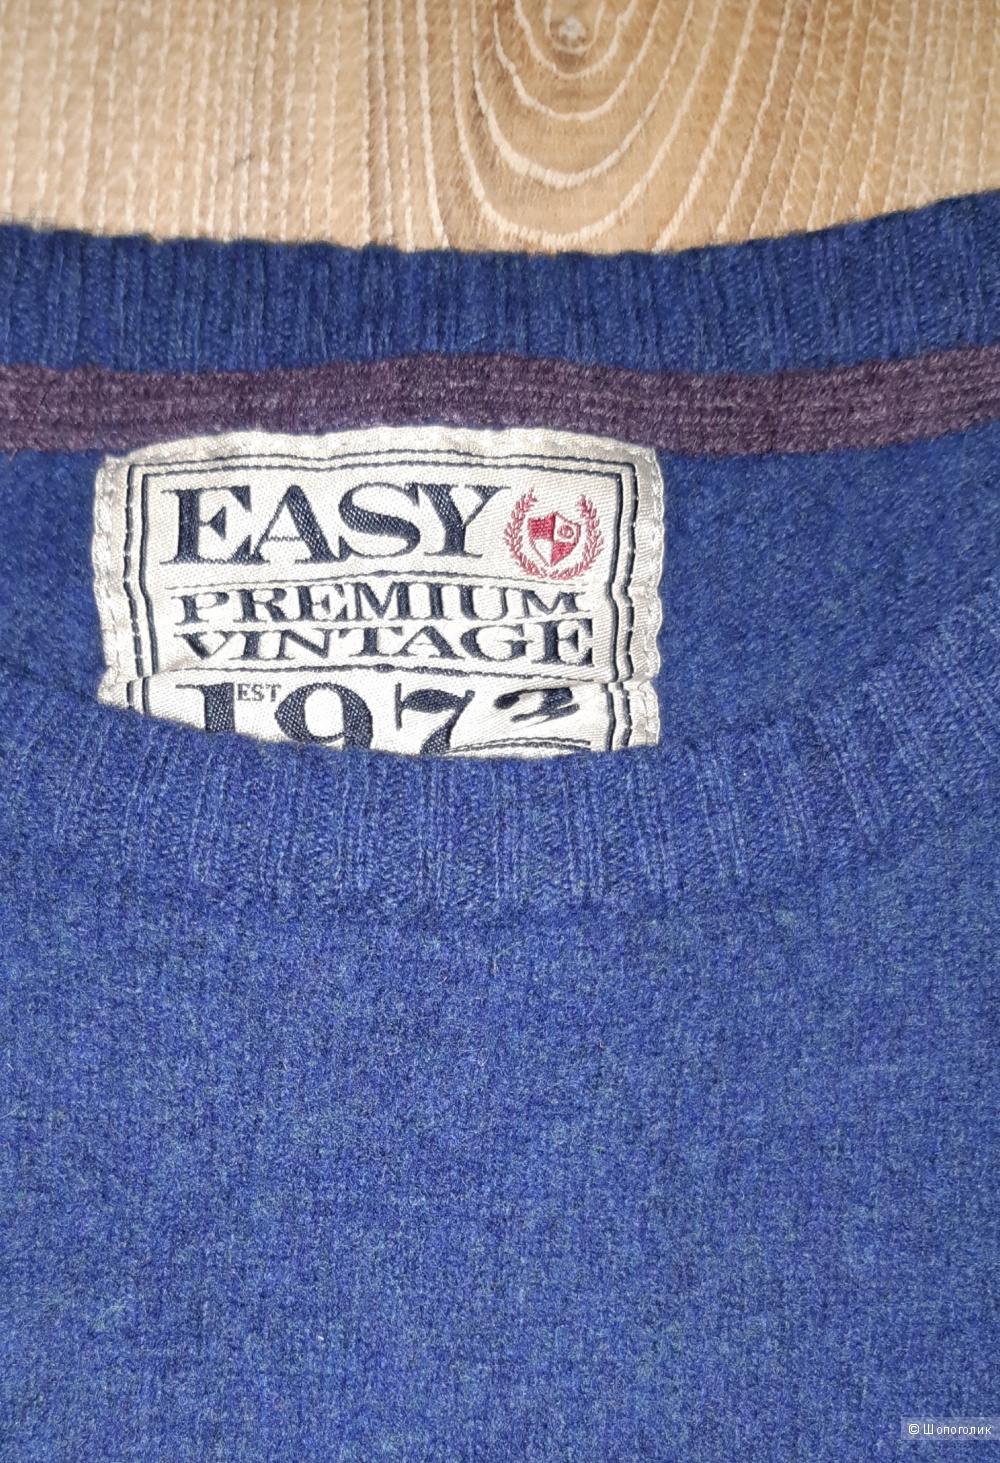 Свитер easy premium vintage, размер 44-46